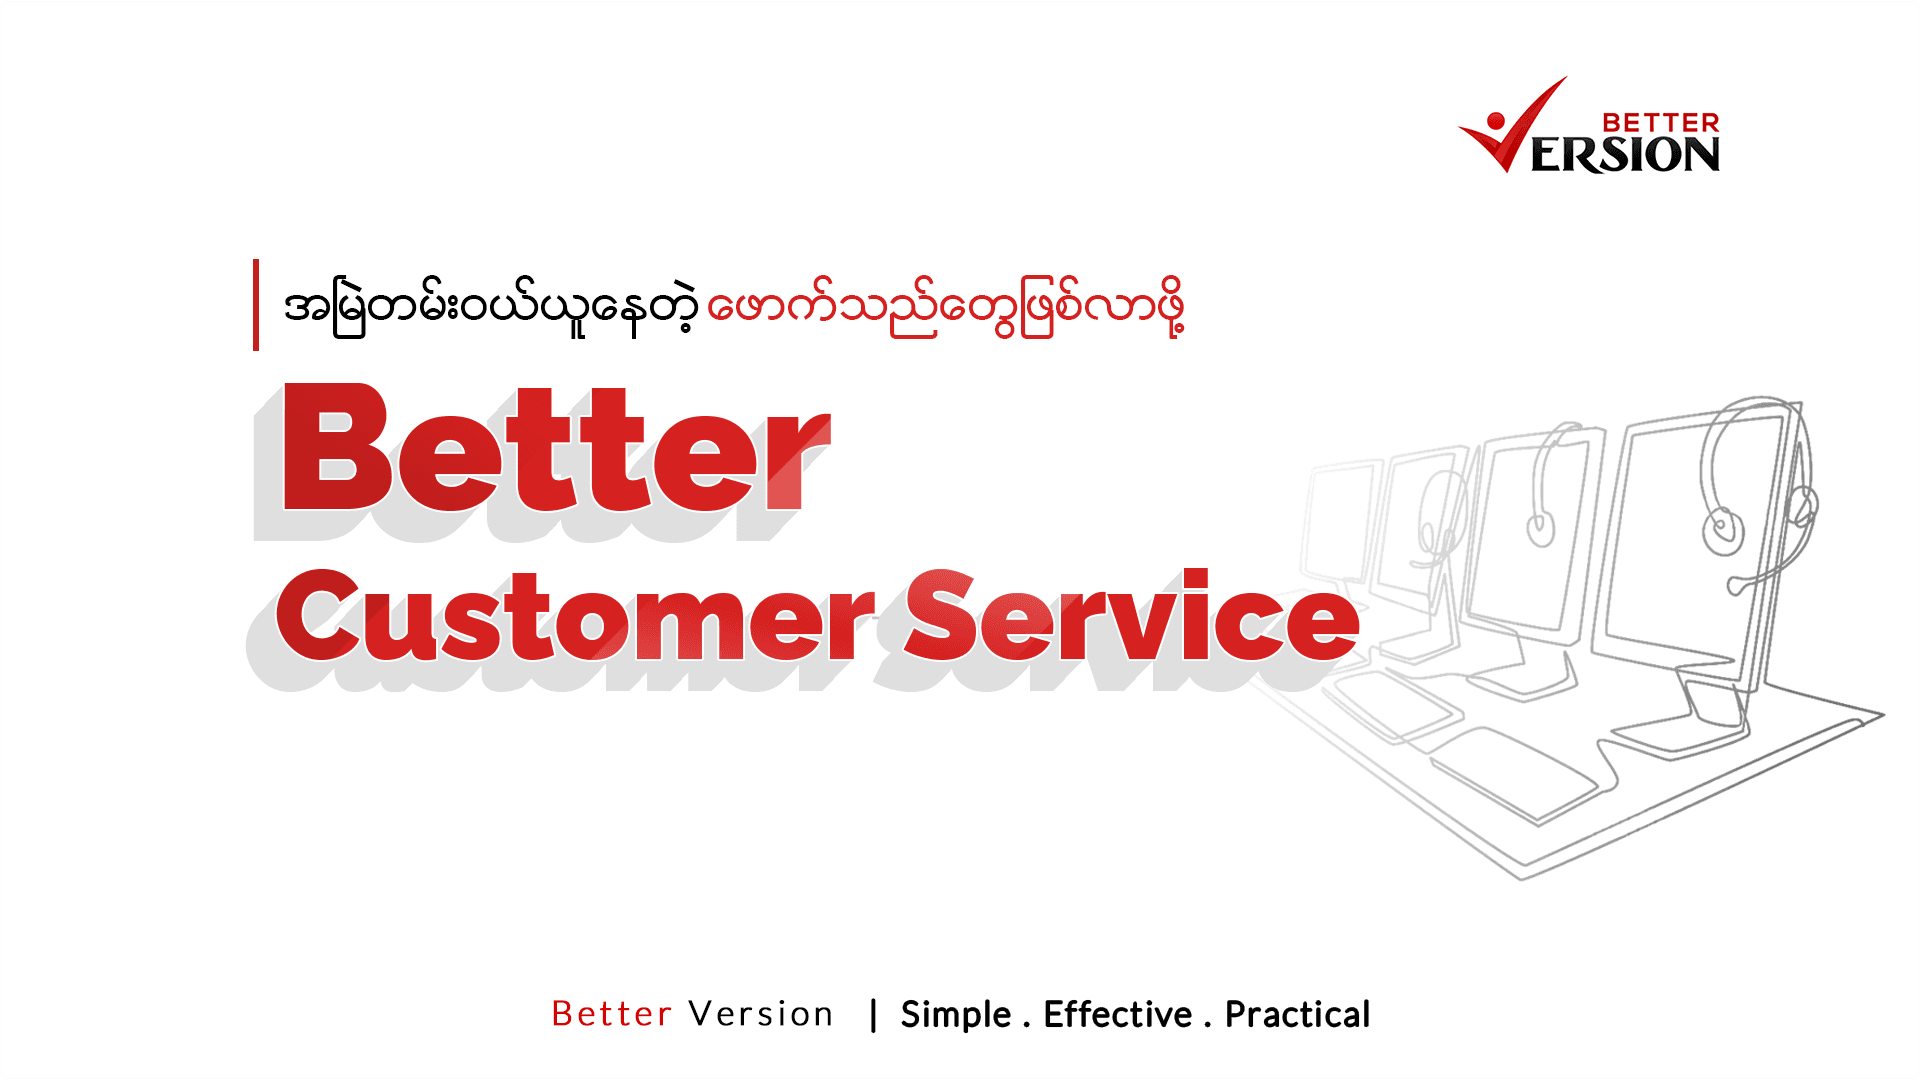 Better Customer Service (ပိုကောင်းတဲ့ ဝန်ဆောင်မှုတွေနဲ့ ယှဥ်ပြိုင်နိုင်ဖို့)